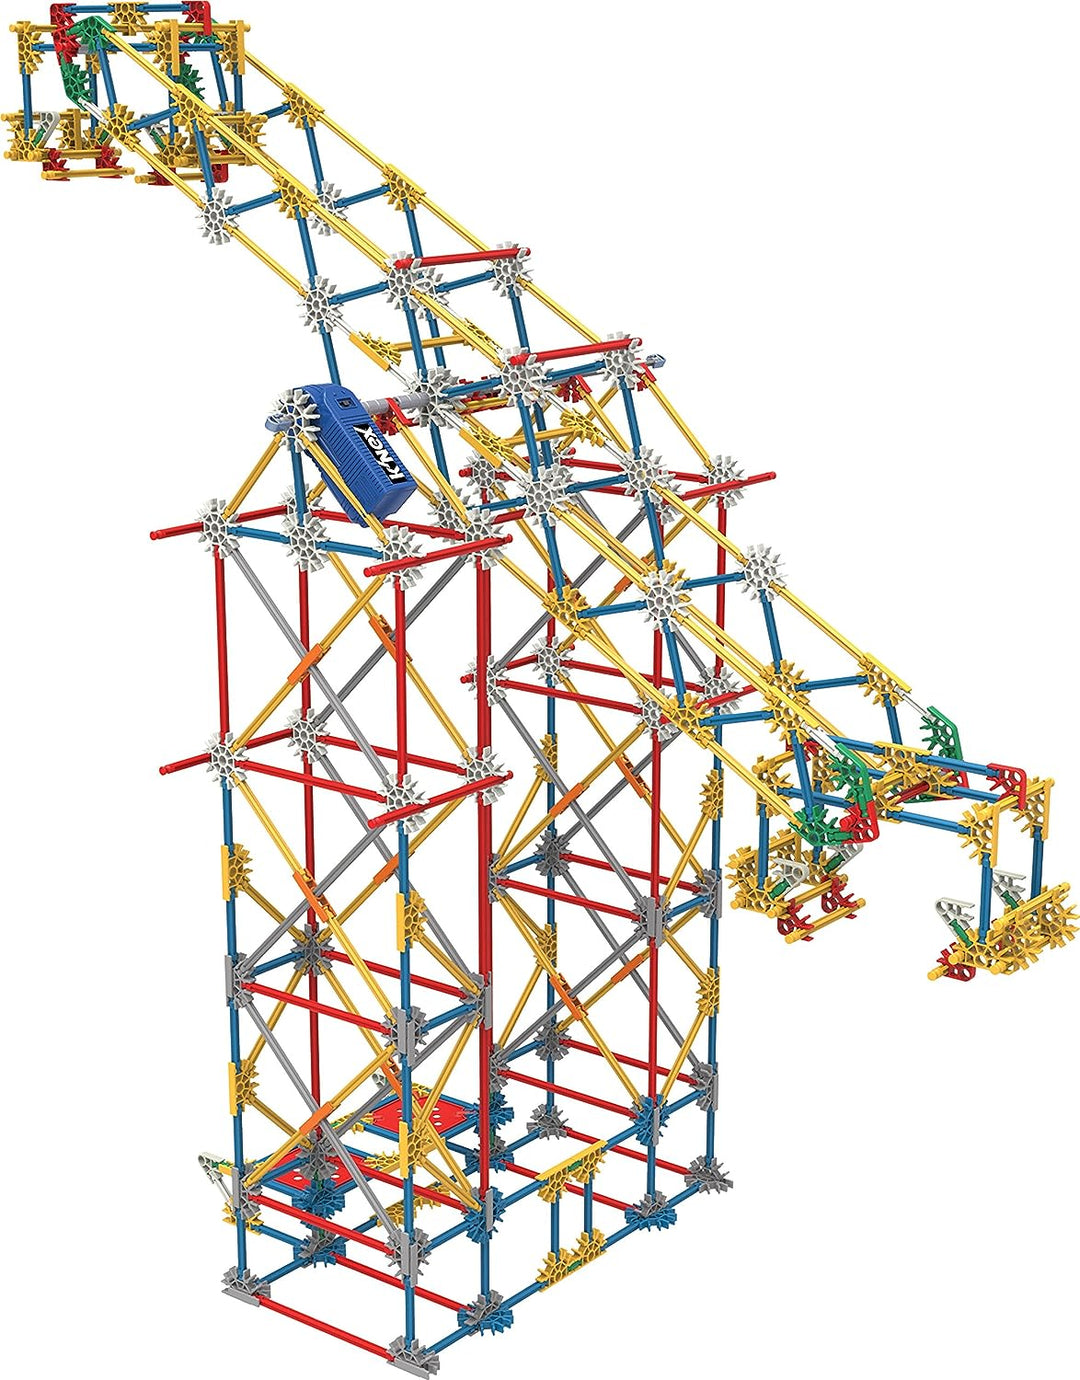 K'NEX 17035 Thrill Rides 3-in-1-Bauset für klassische Vergnügungsparks, 744-teiliges Kinderbauset für kreatives Spielen, stundenlanger Spaß beim Bauen von drei Fahrgeschäften auf dem Messegelände, geeignet für Jungen und Mädchen ab 9 Jahren